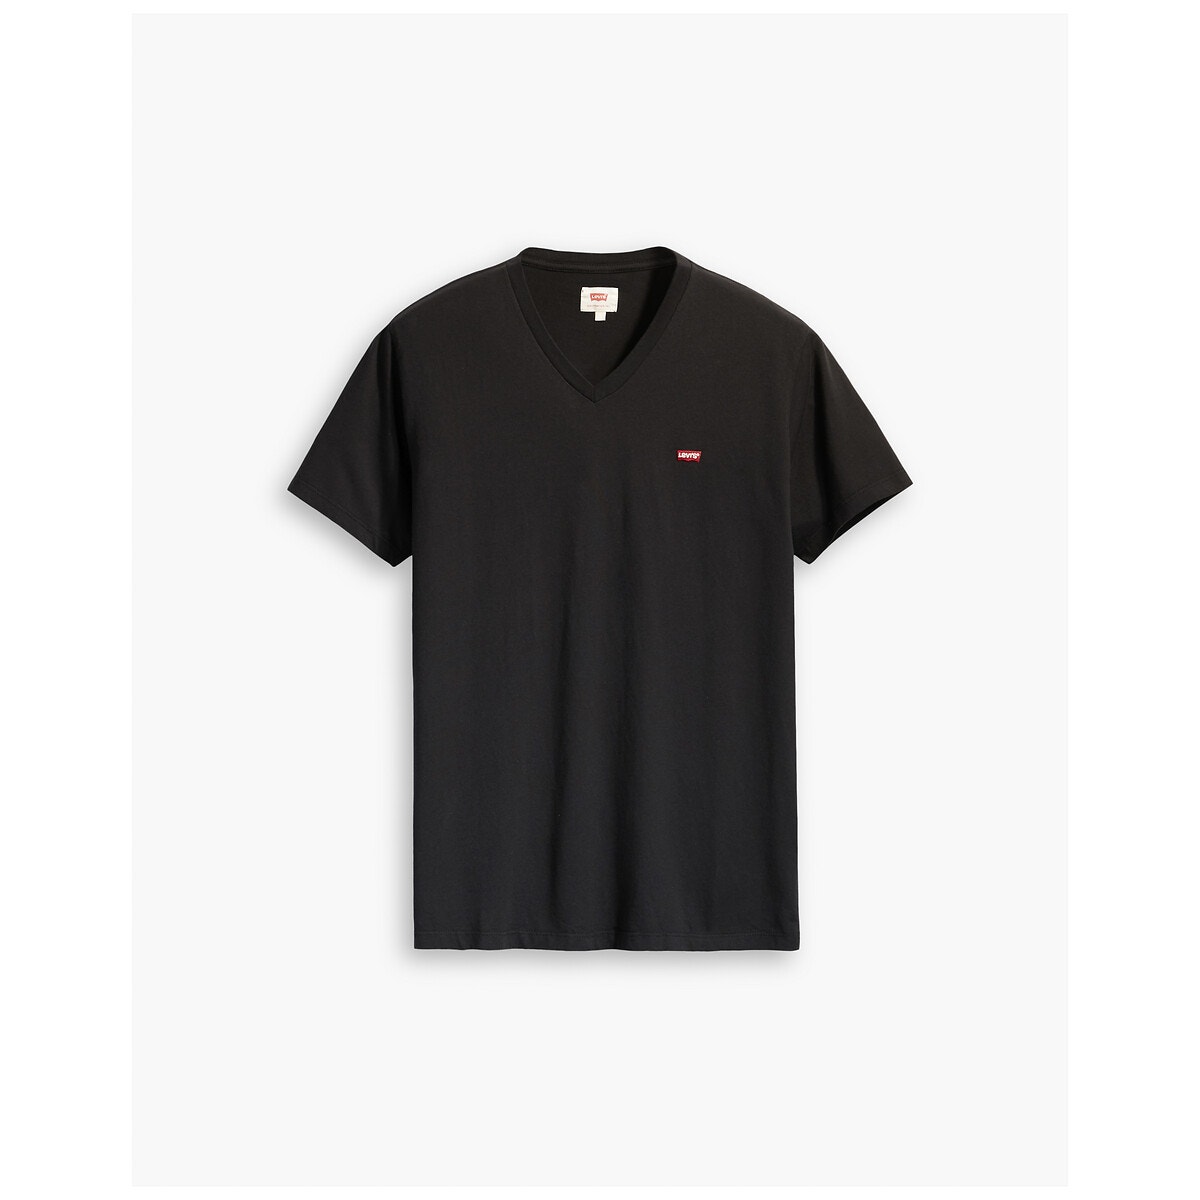 ΑΝΔΡΑΣ | Μπλούζες & Πουκάμισα | T-shirts Μπλούζα με V και λογότυπο, Chesthit